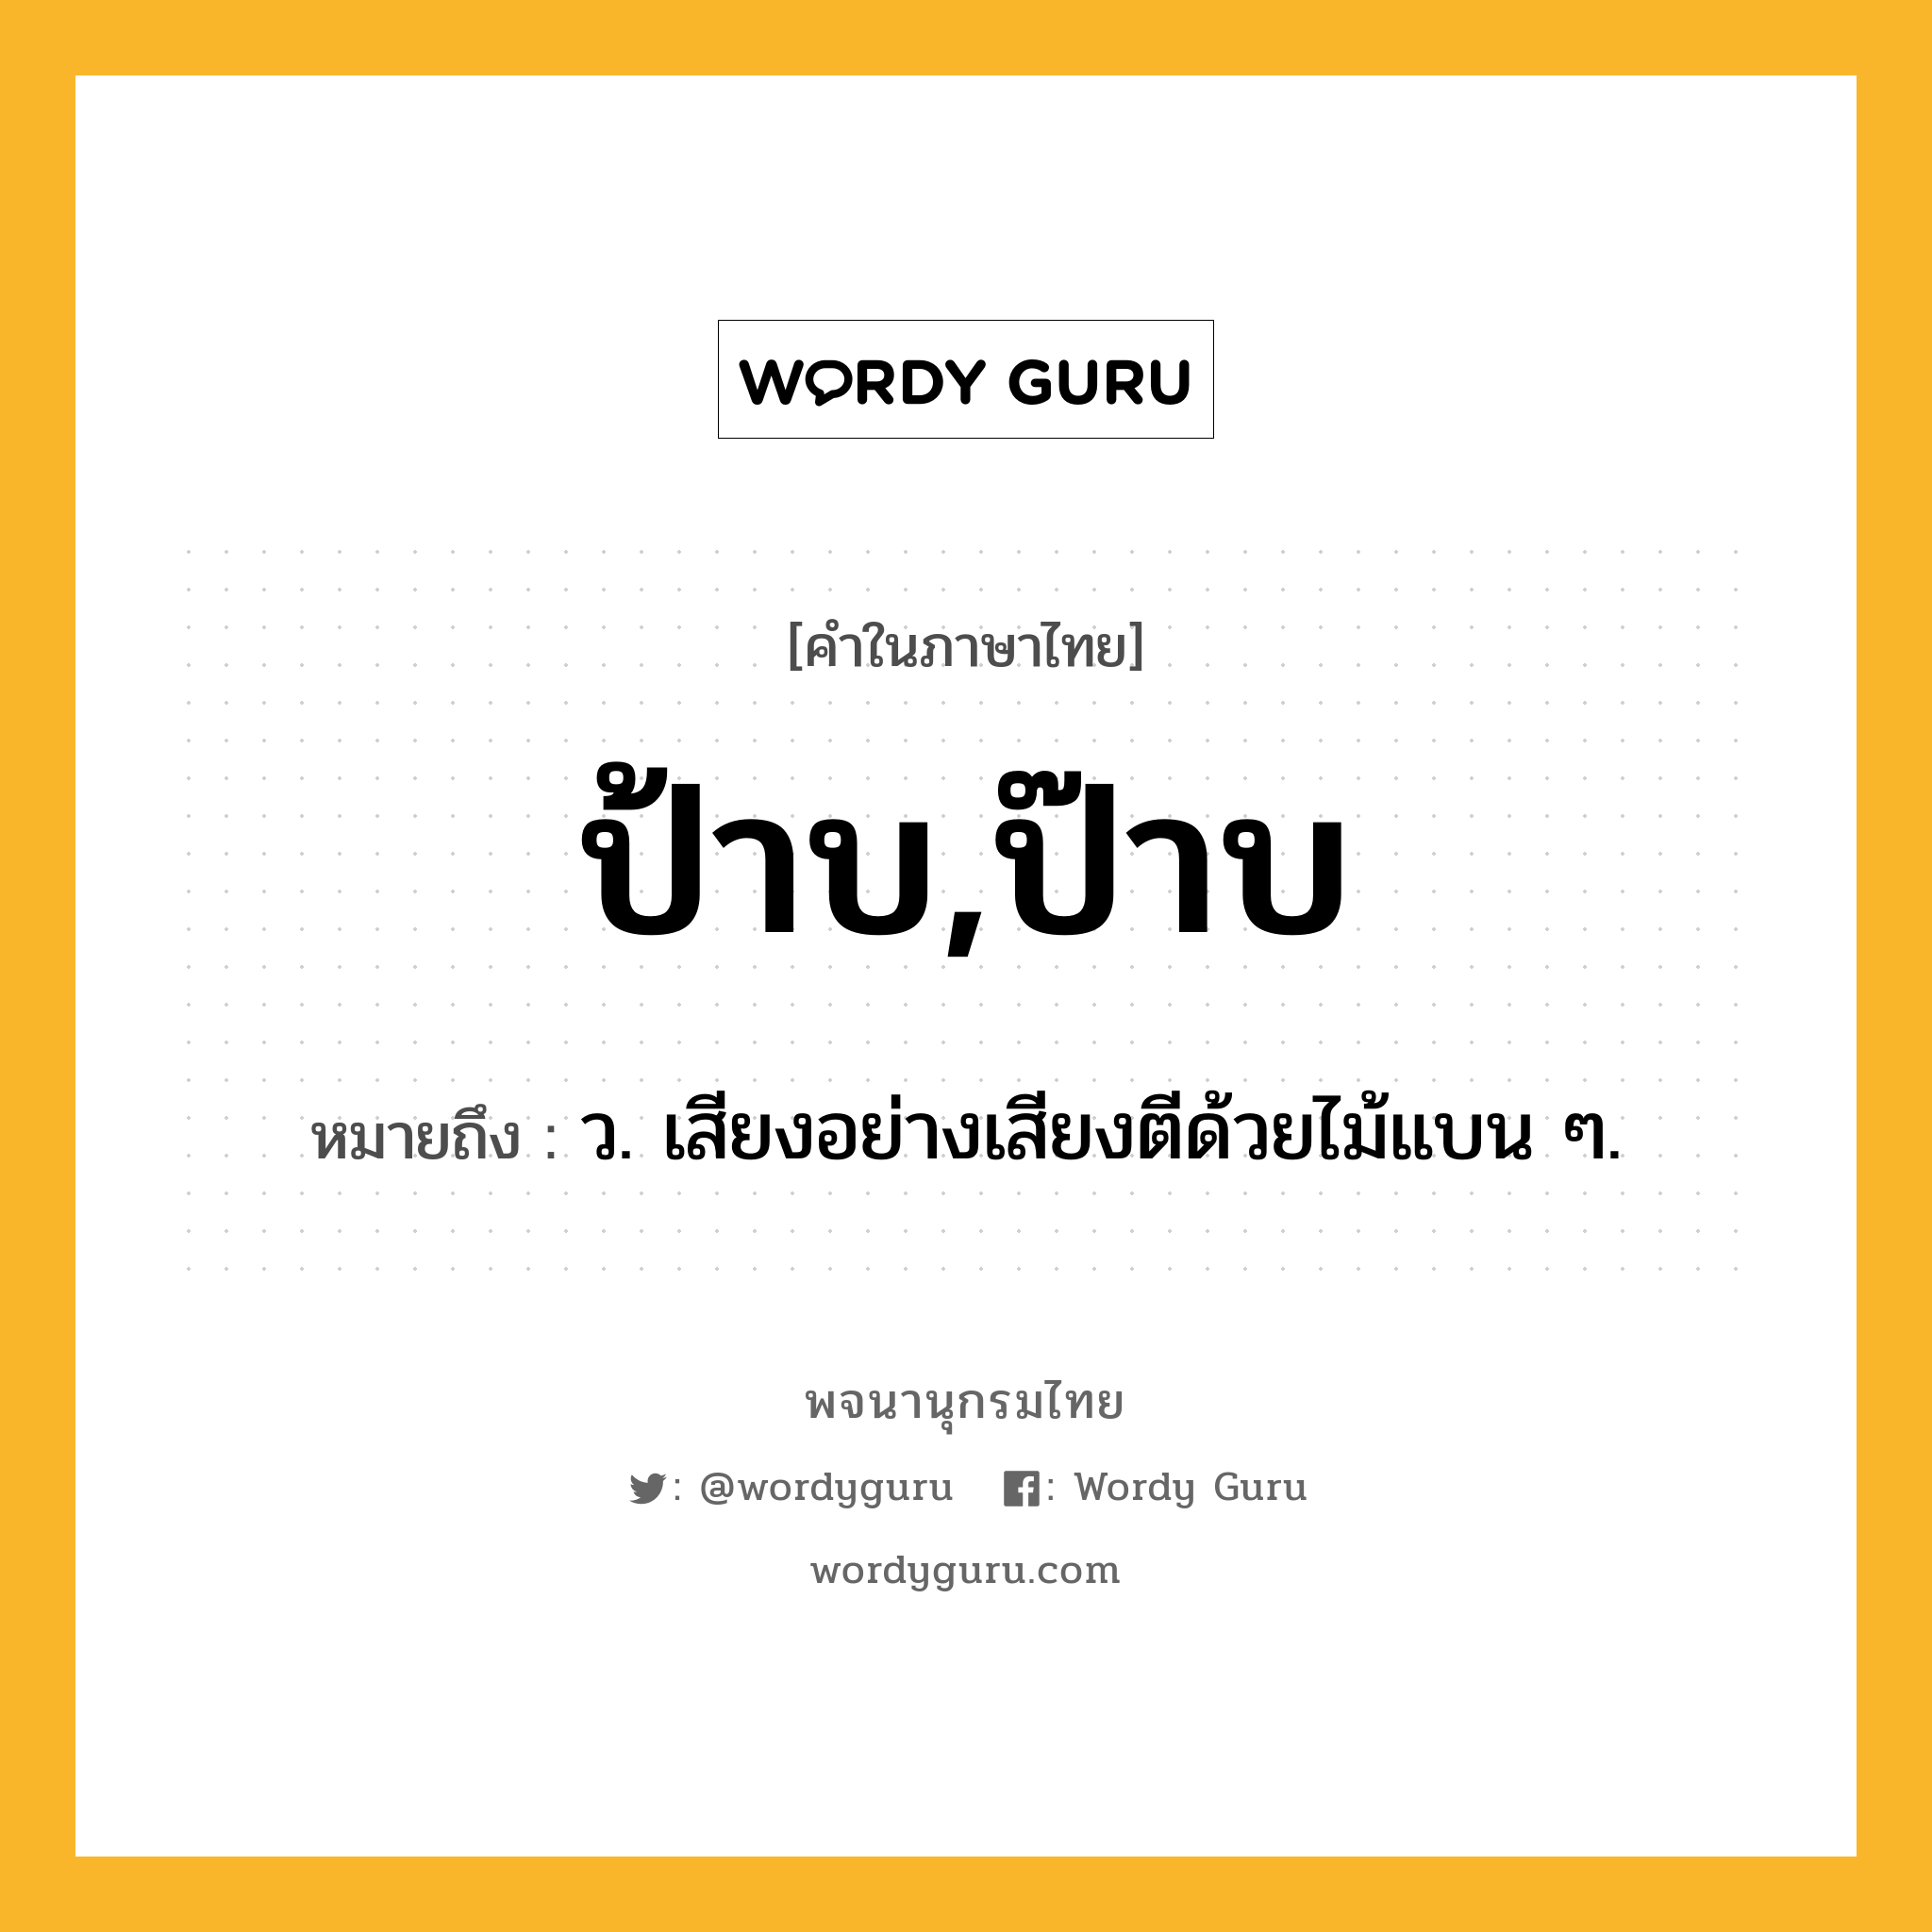 ป้าบ,ป๊าบ ความหมาย หมายถึงอะไร?, คำในภาษาไทย ป้าบ,ป๊าบ หมายถึง ว. เสียงอย่างเสียงตีด้วยไม้แบน ๆ.